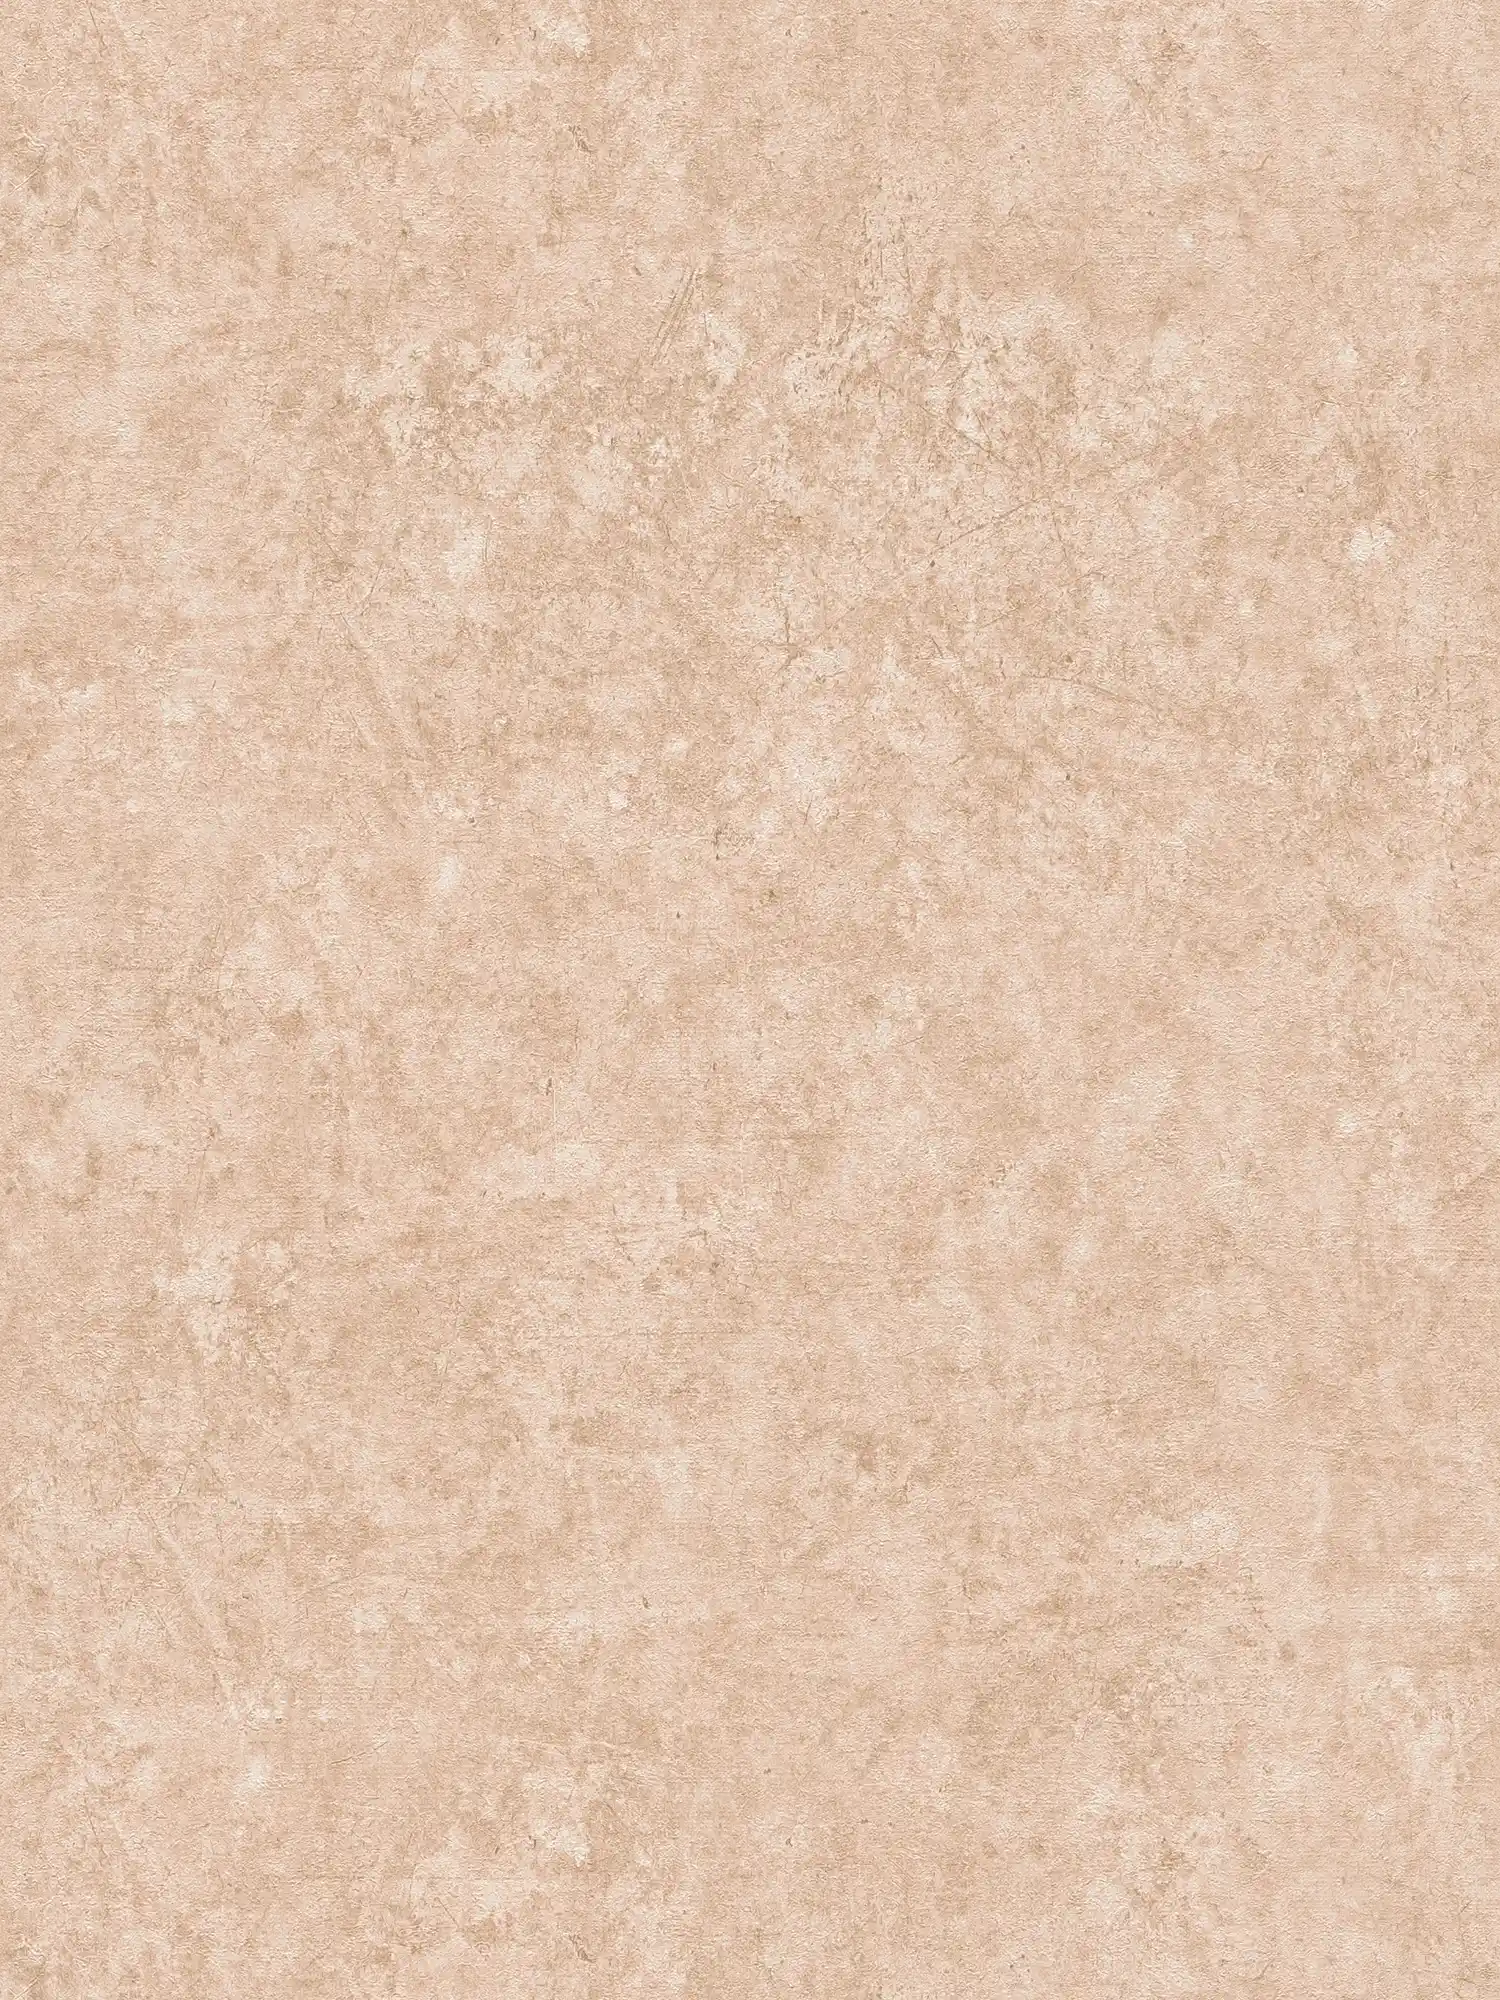 Papel pintado no tejido liso con textura - marrón claro, beige
